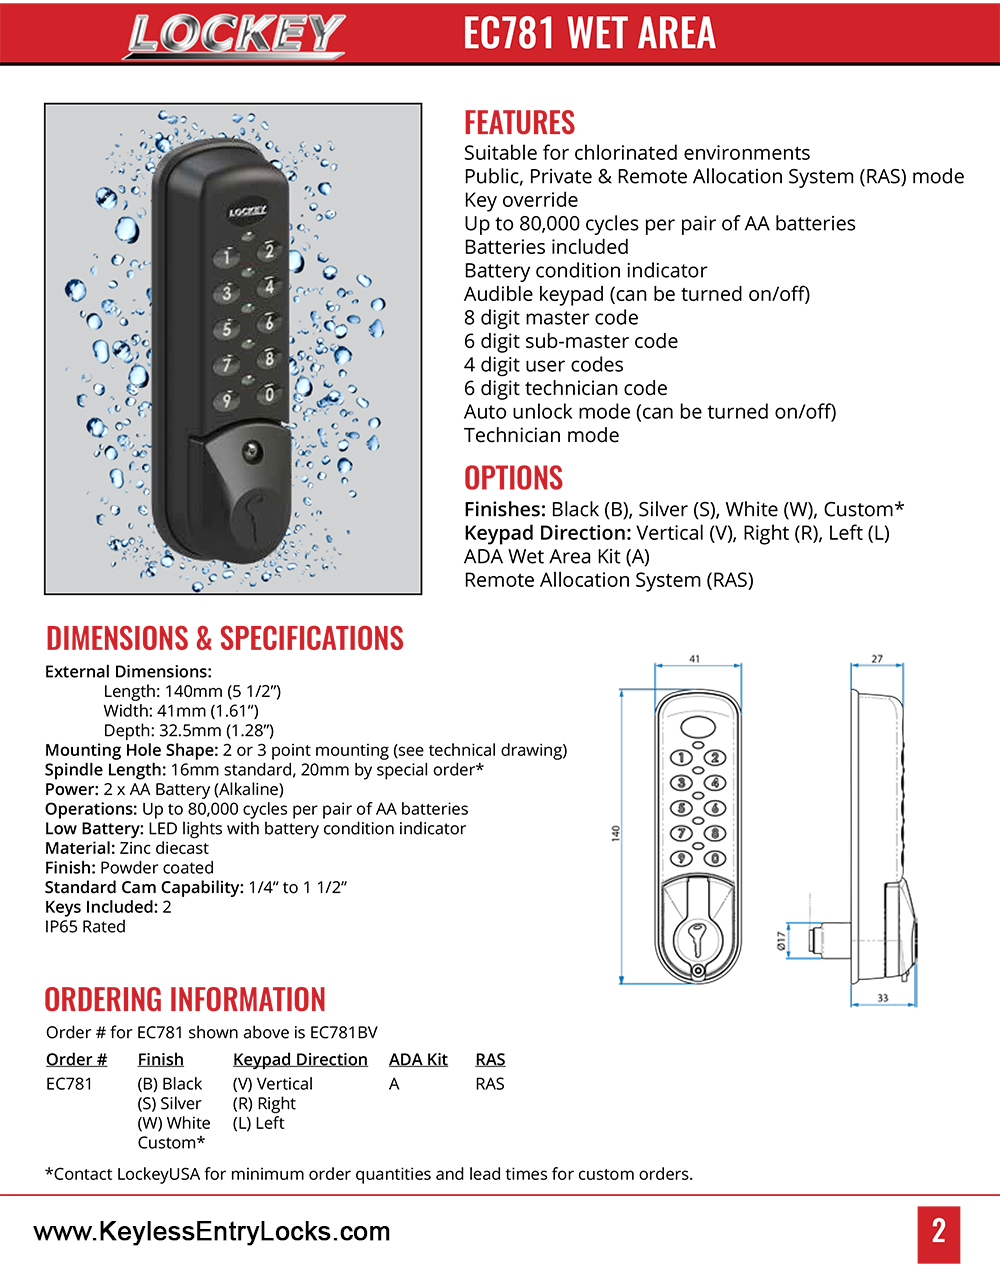 Lockey EC-781 Wet Area Electronic Cabinet/Locker Lock